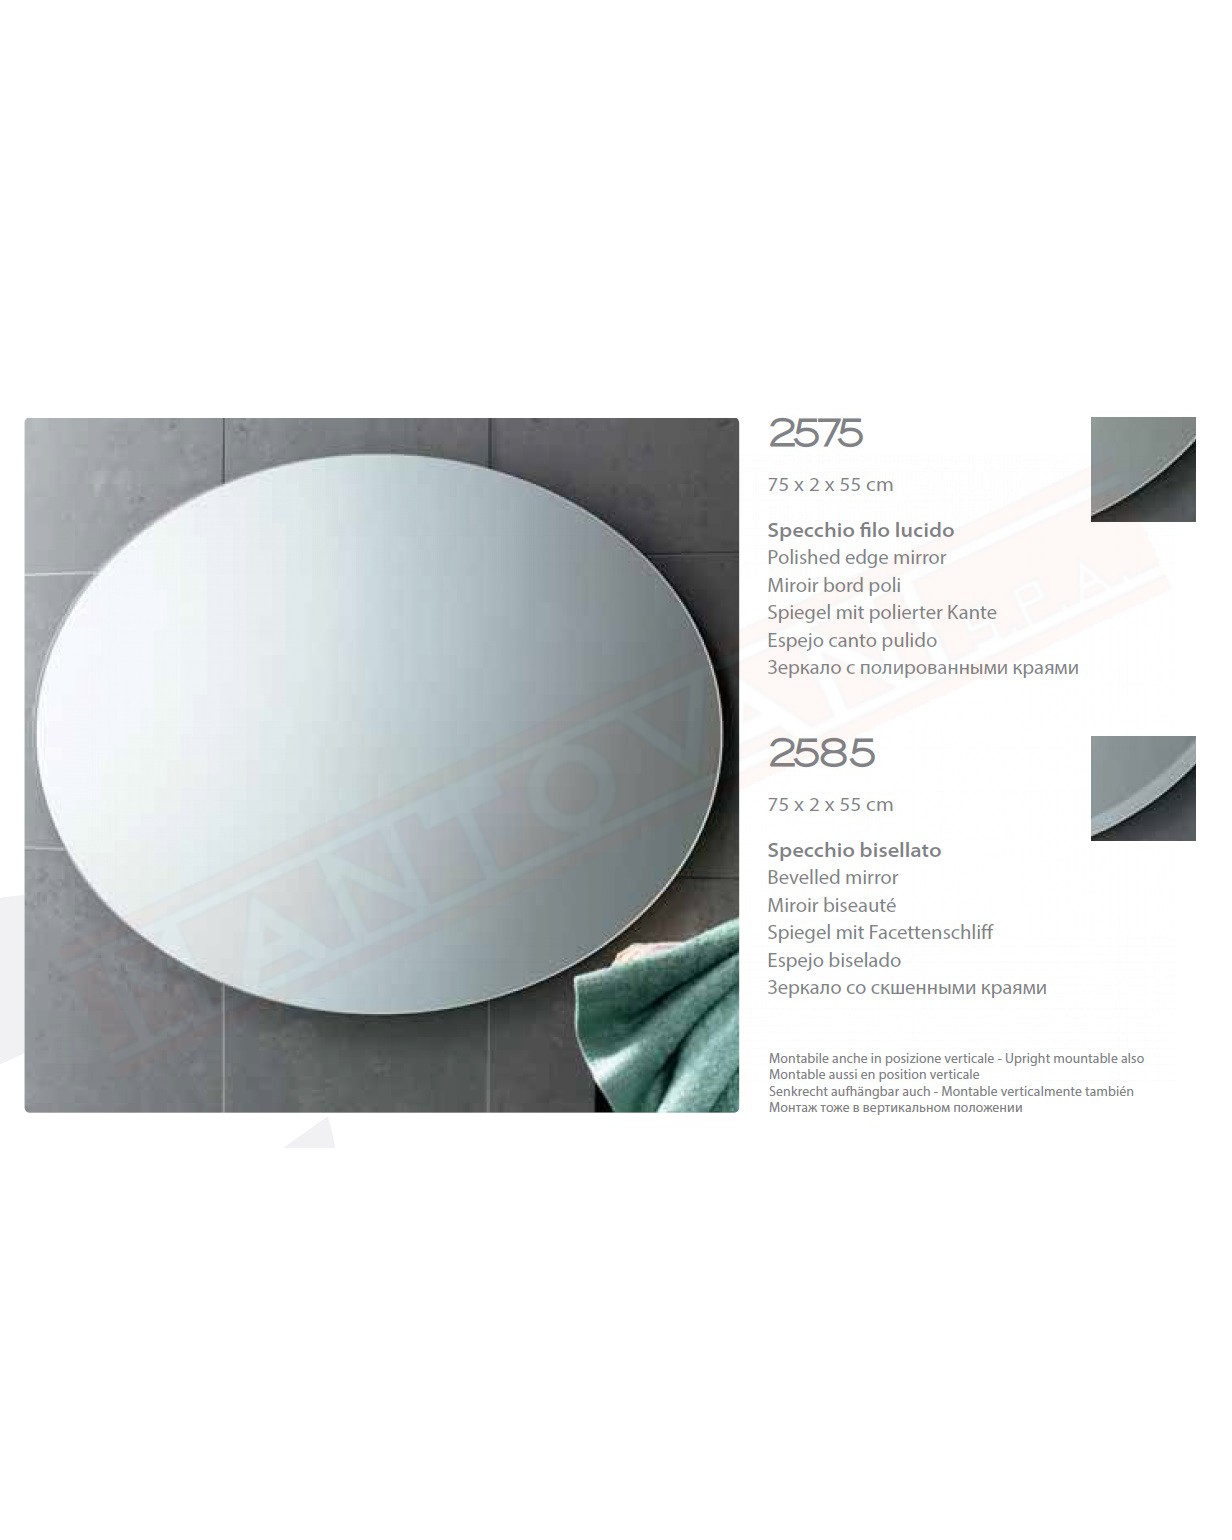 Gedy specchio bagno filo lucido ovale 55x75 reversibile misure art 75x2x55